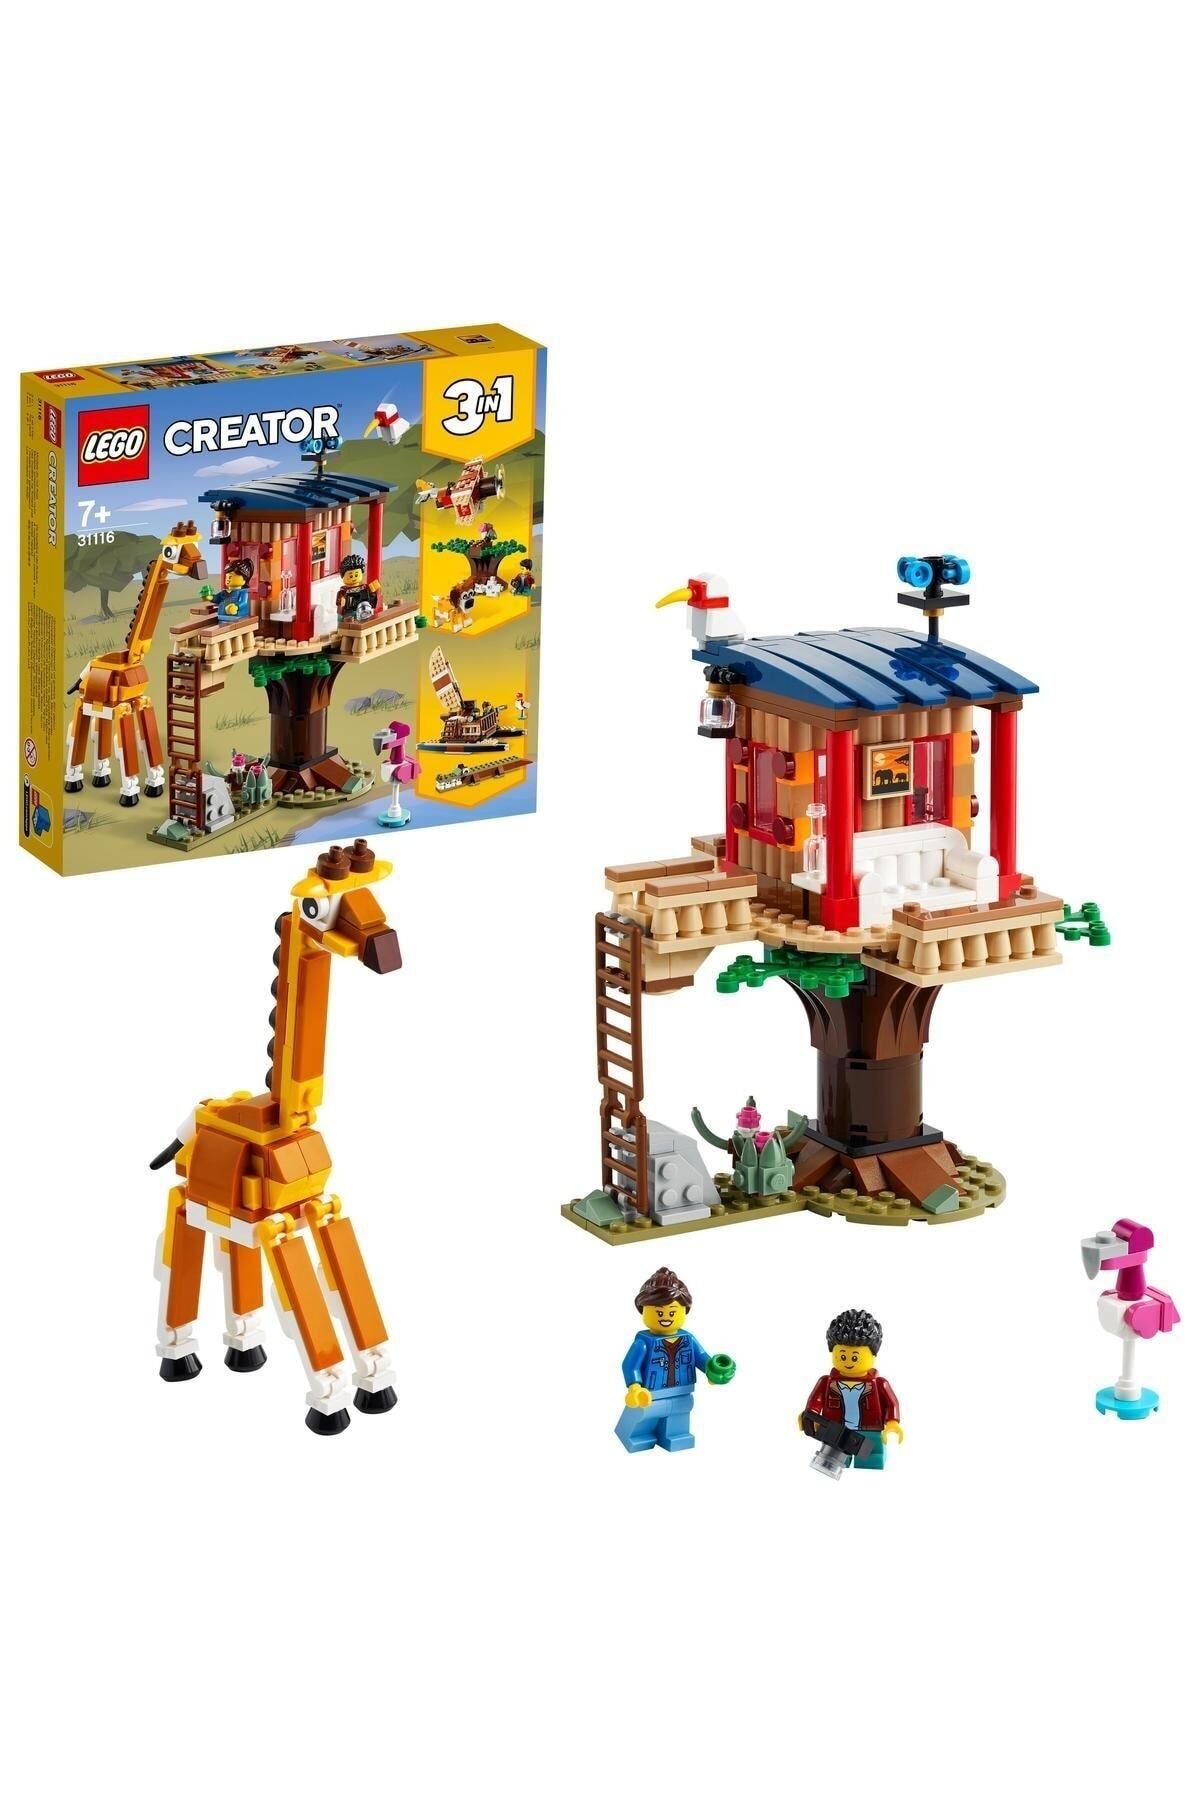 LEGO Creator 3’ü 1 Arada Safari Ağaç Evi /397 Parça / 7 Yaş 31116